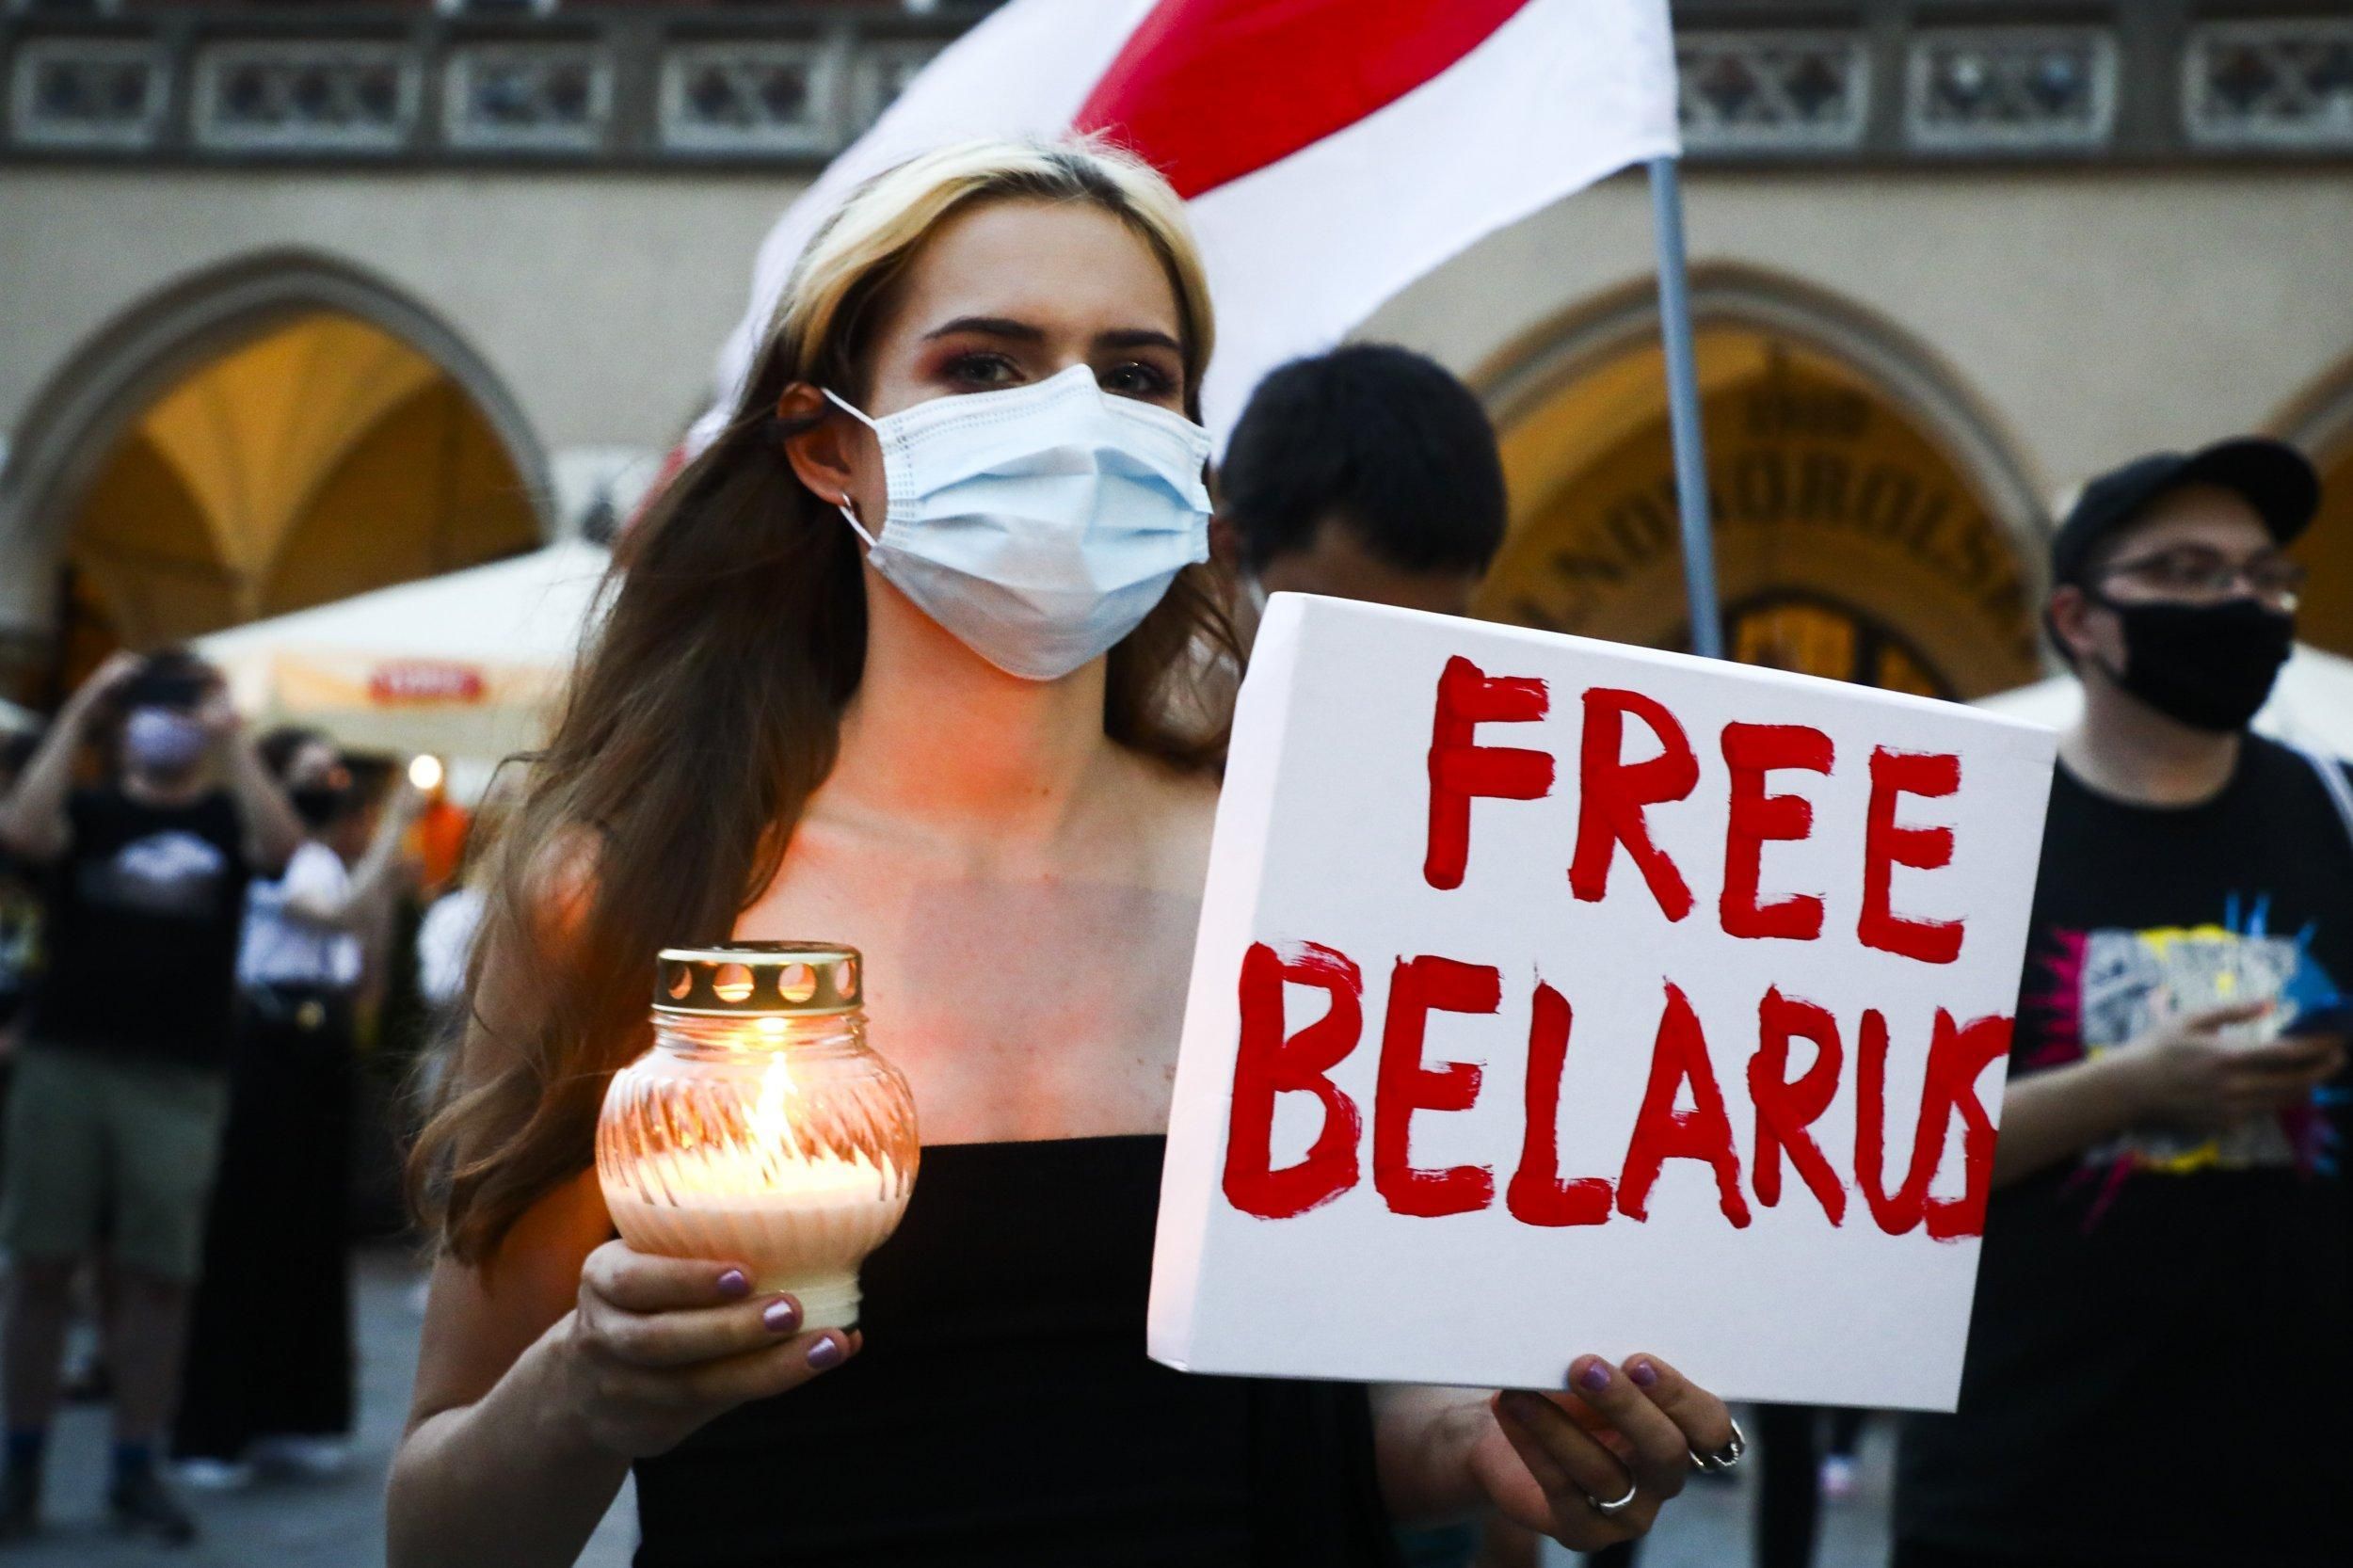  Протесты в Беларуси 2020: хроника событий в видео